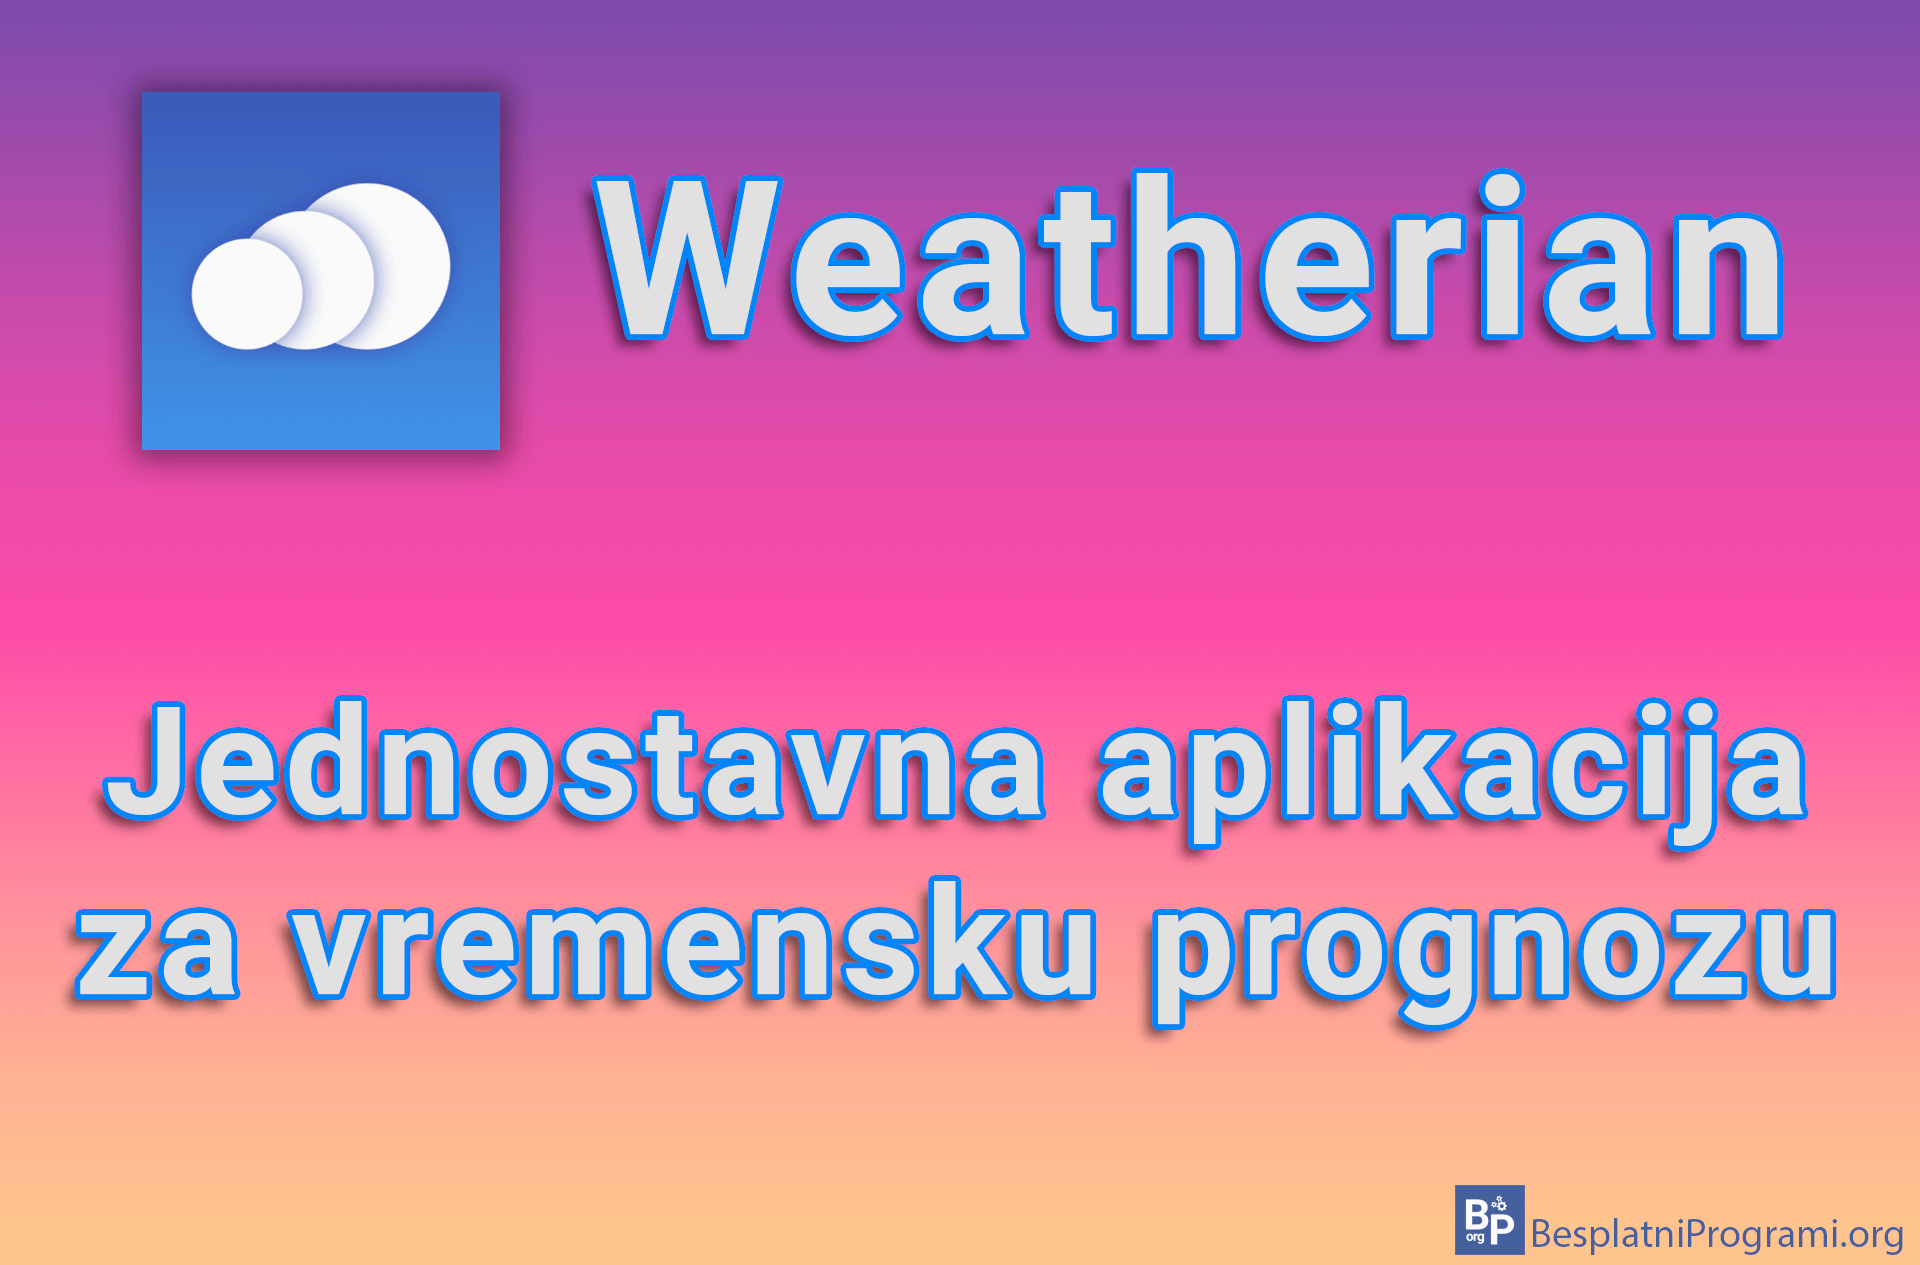 Weatherian - Jednostavna aplikacija za vremensku prognozu